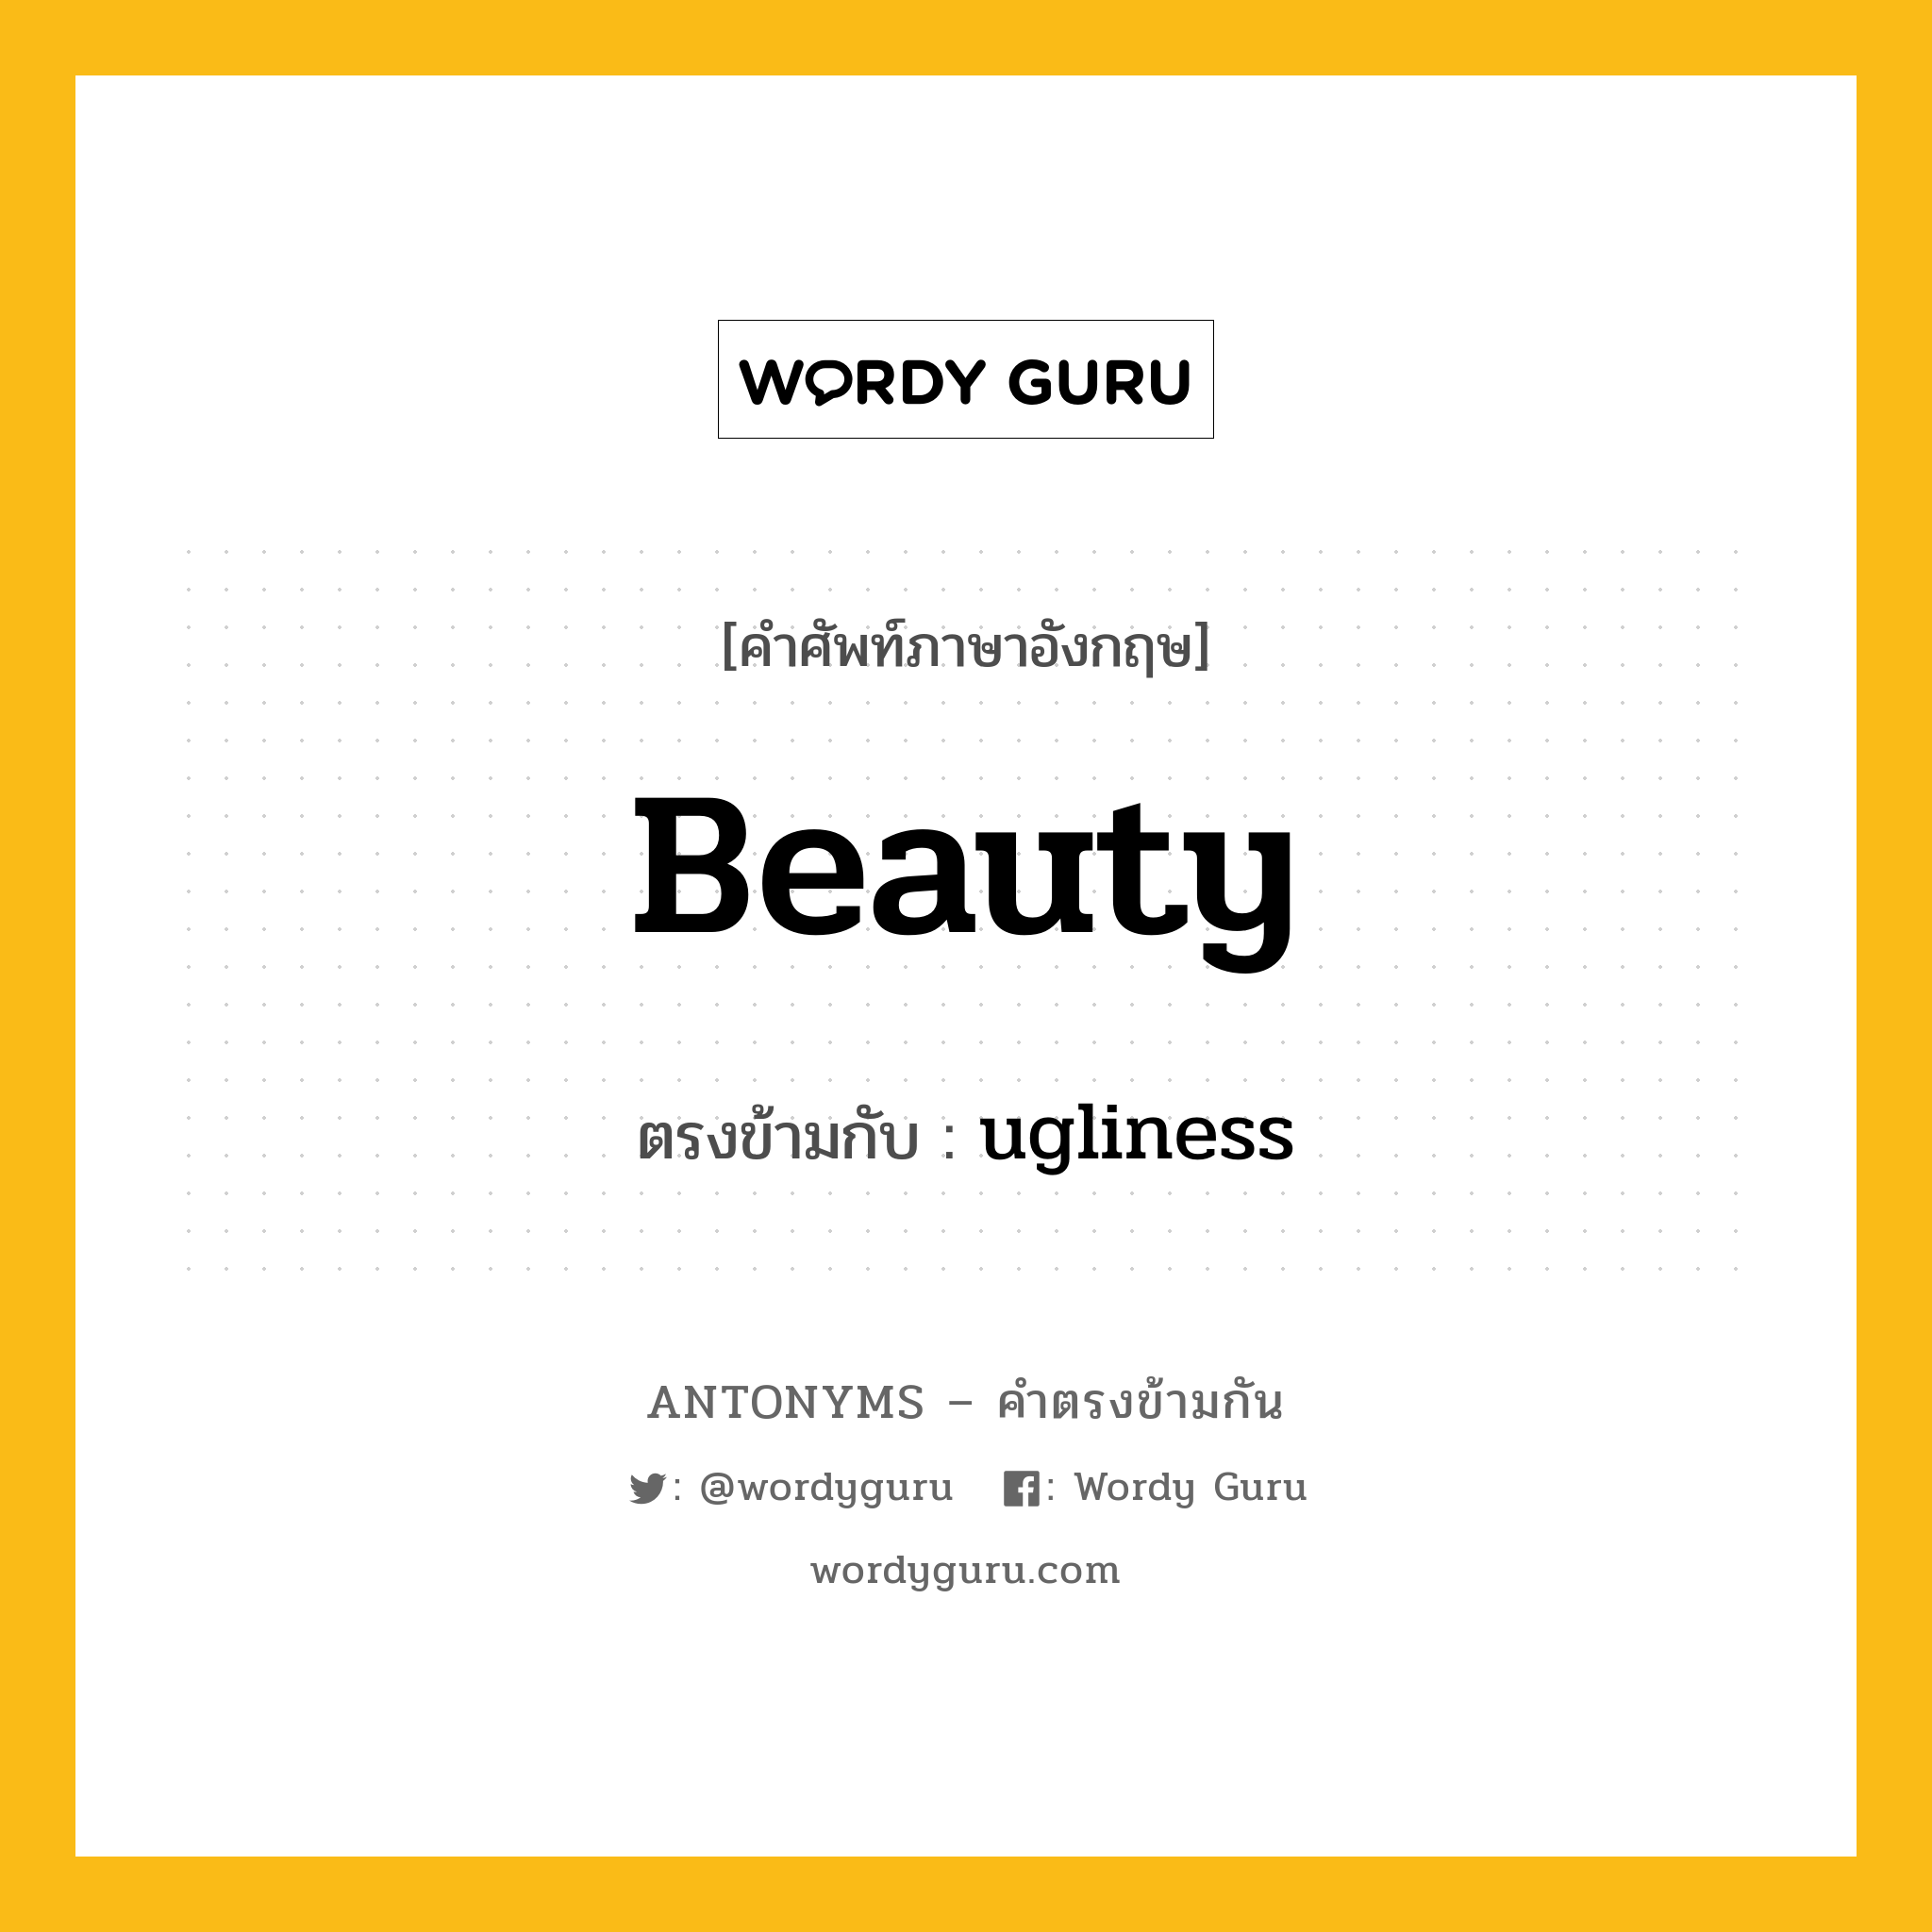 beauty เป็นคำตรงข้ามกับคำไหนบ้าง?, คำศัพท์ภาษาอังกฤษ beauty ตรงข้ามกับ ugliness หมวด ugliness